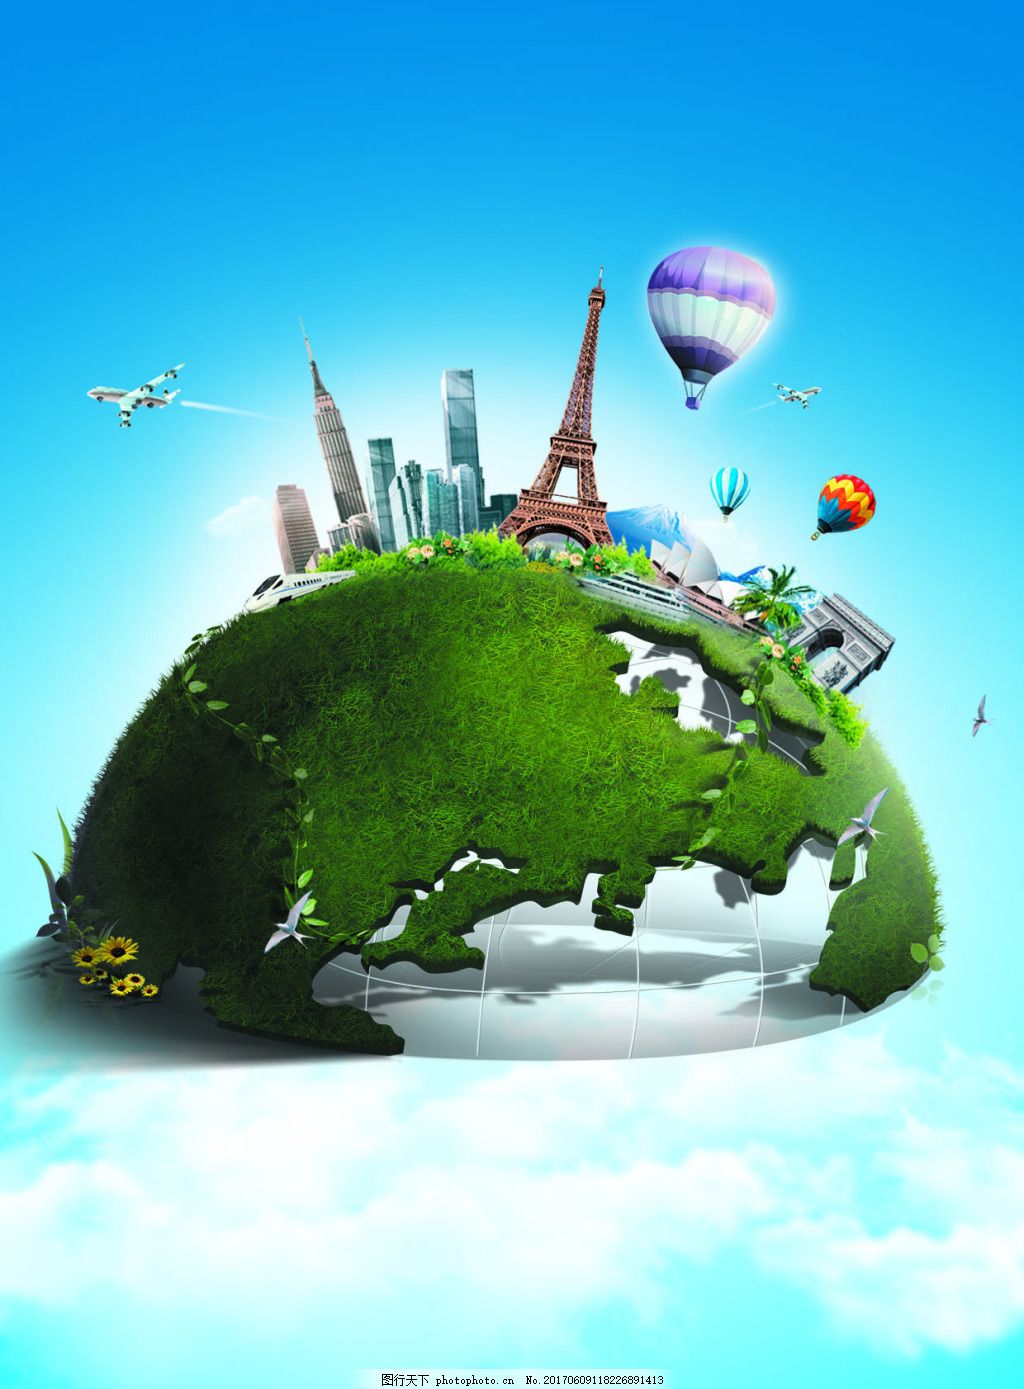 绿色创意爱护环境4月22日世界地球日公益海报图片下载 - 觅知网